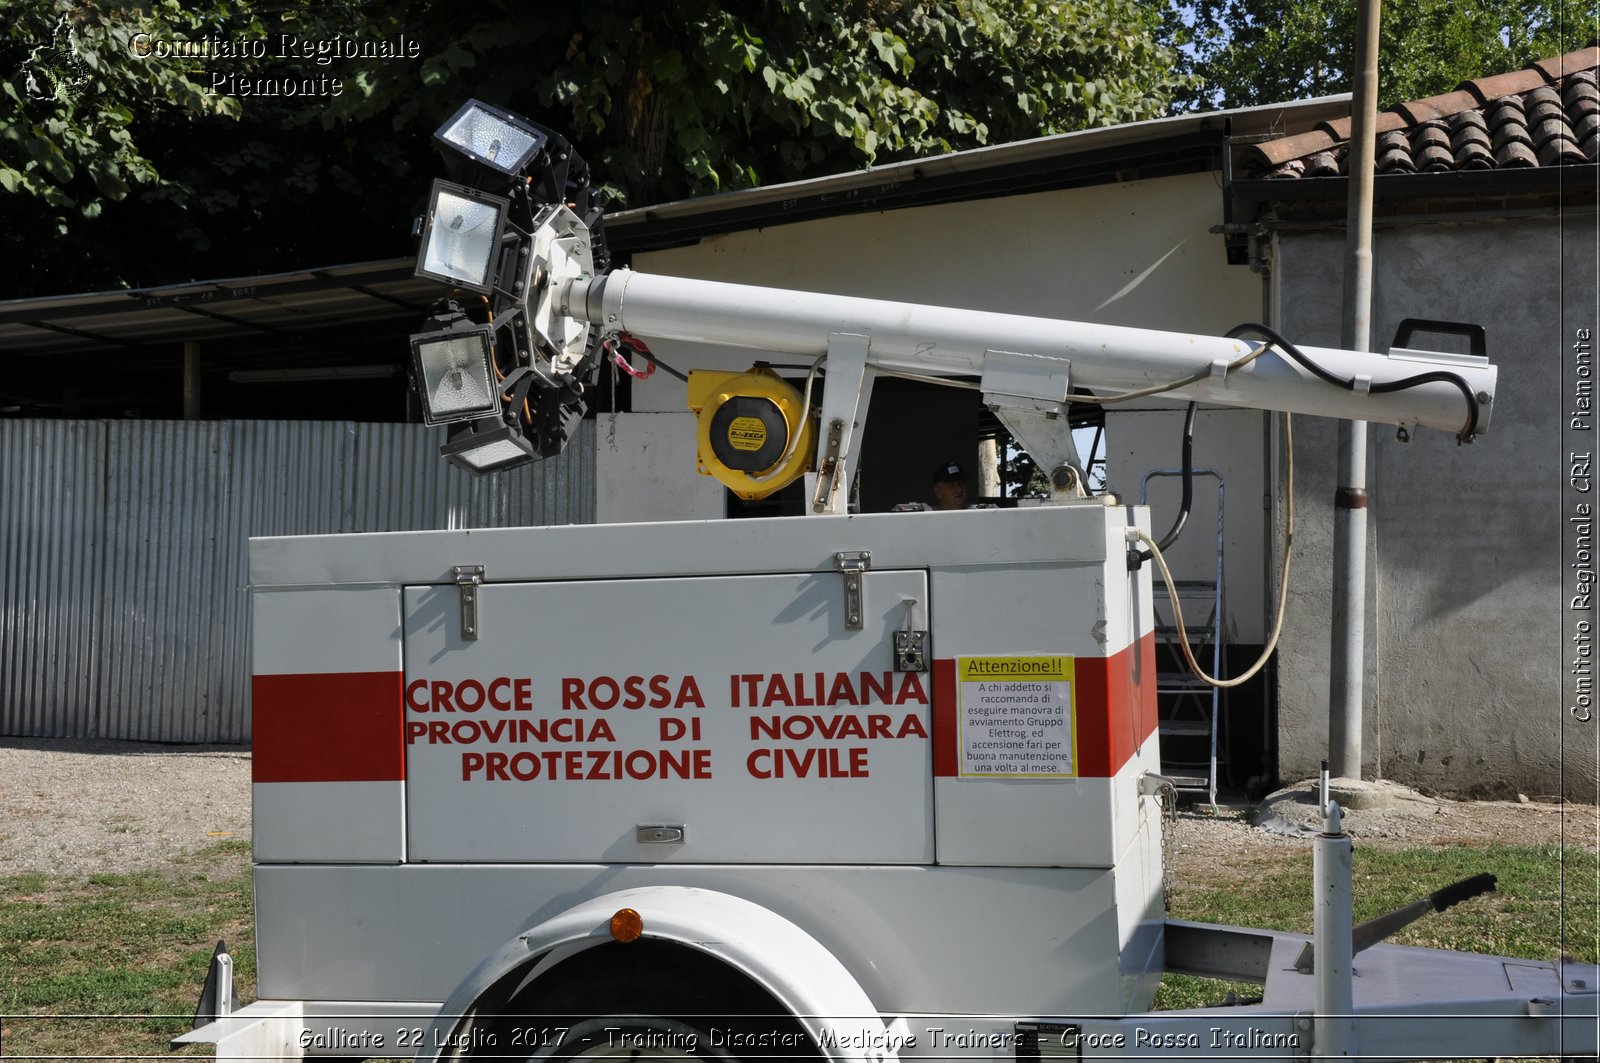 Galliate 22 Luglio 2017 - Training Disaster Medicine Trainers - Croce Rossa Italiana- Comitato Regionale del Piemonte